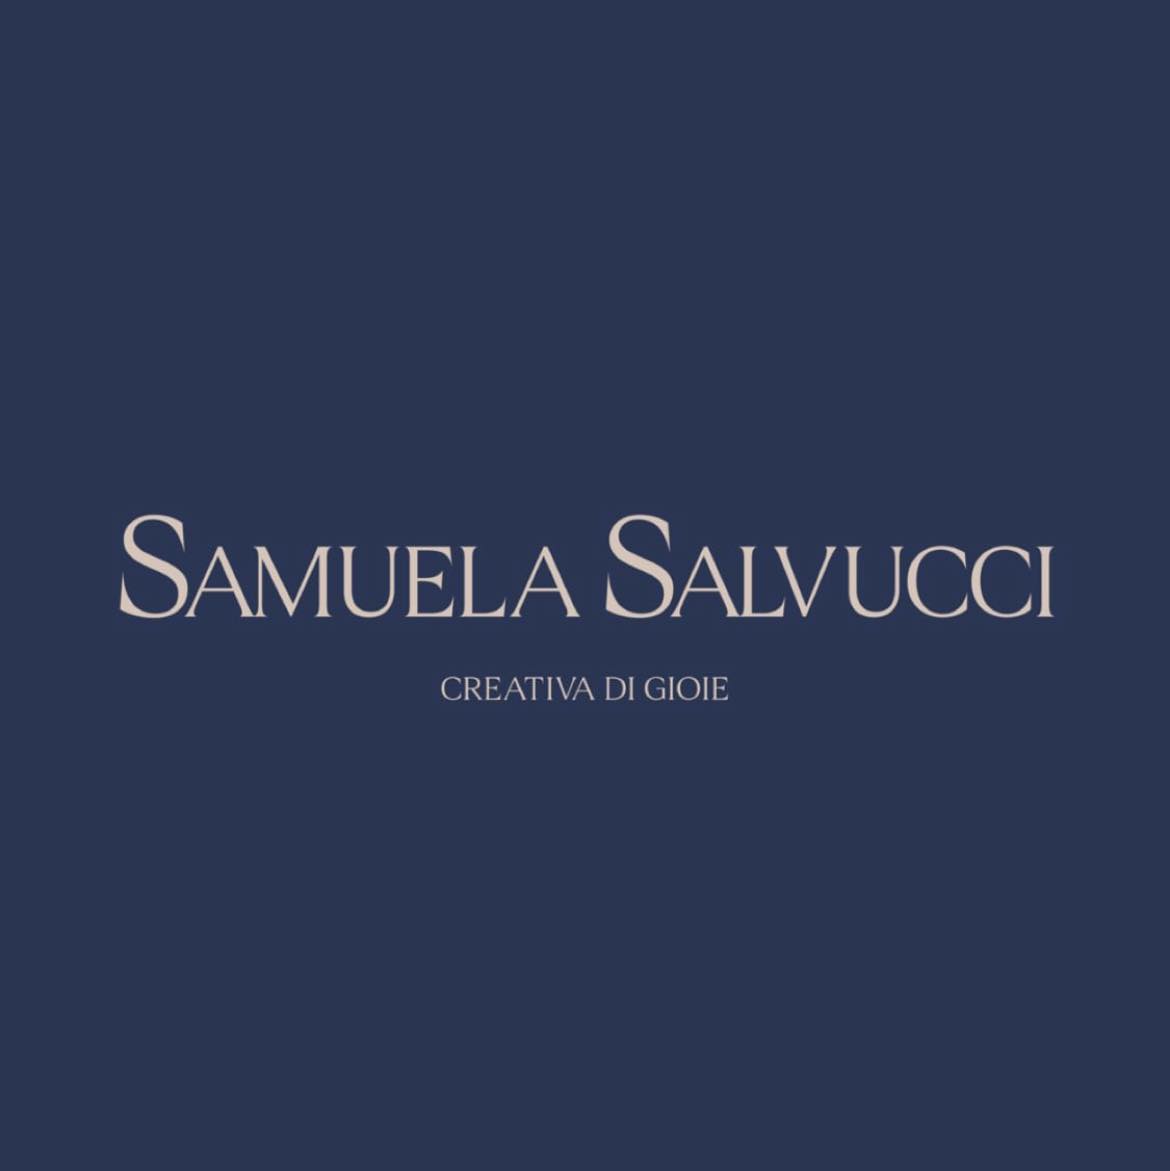 Salvucci Samuela - Lavorazione e creazione gioielli